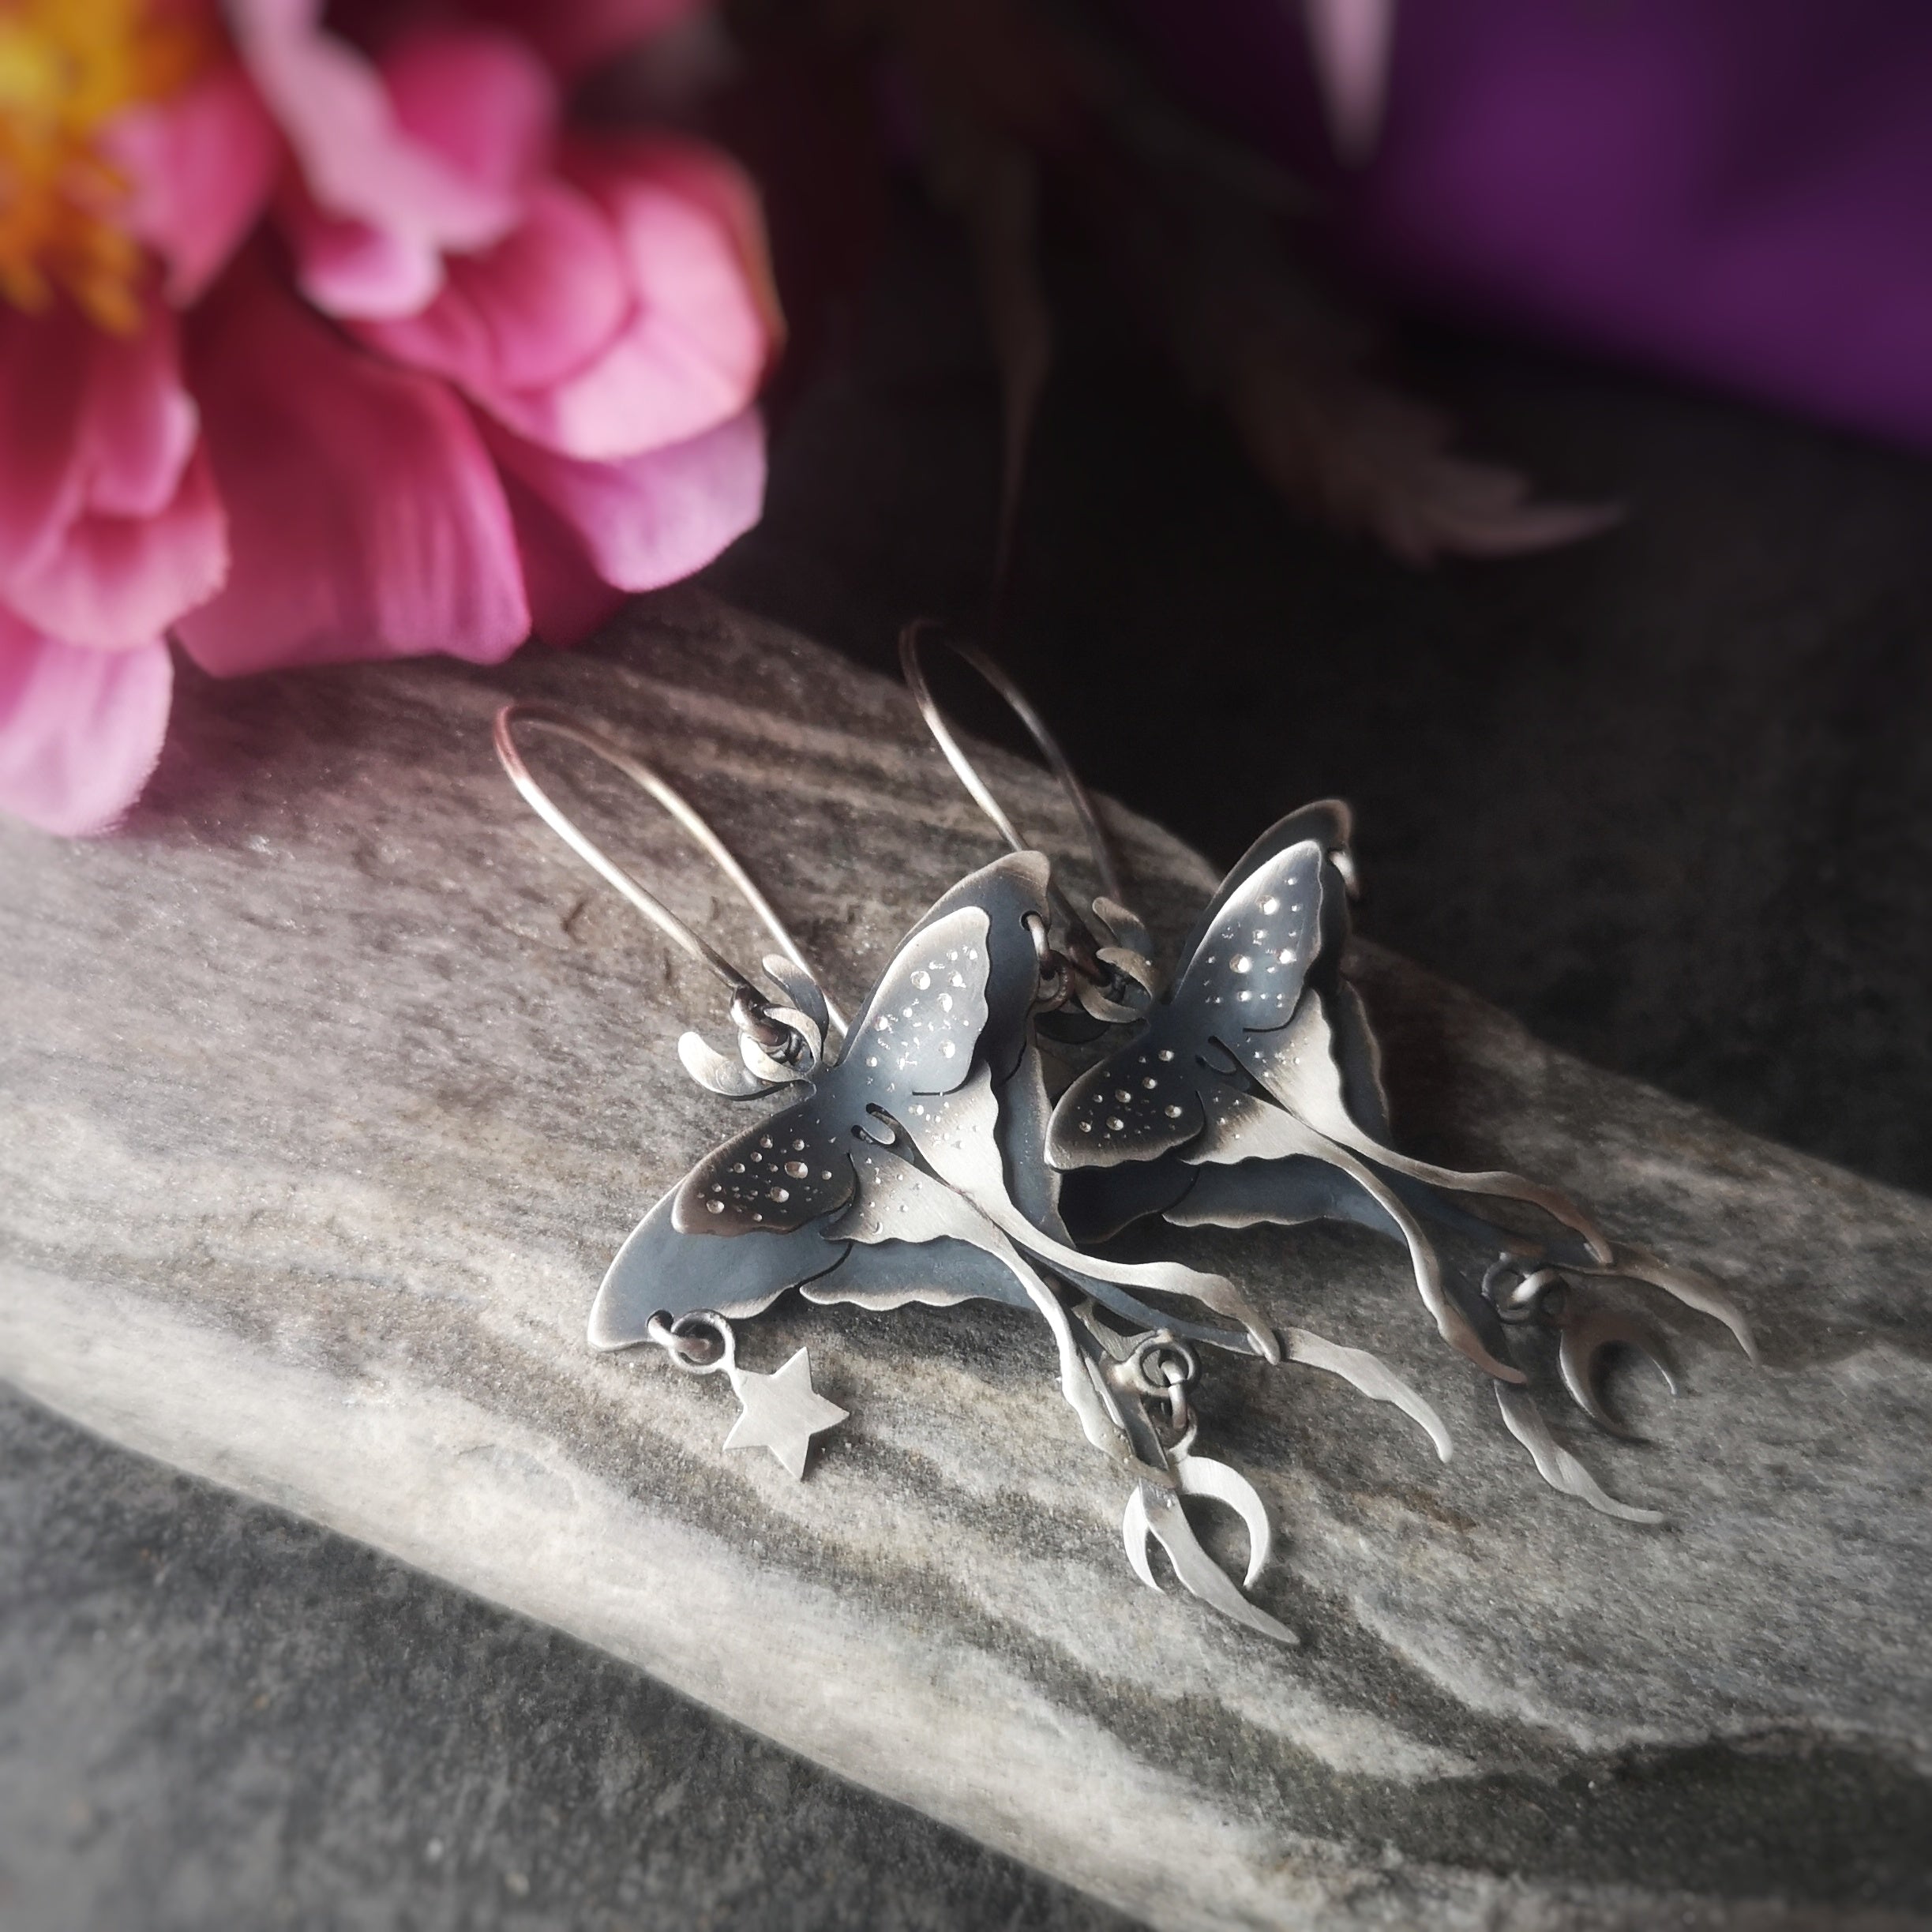 The Luna Moth Chandelier Earrings